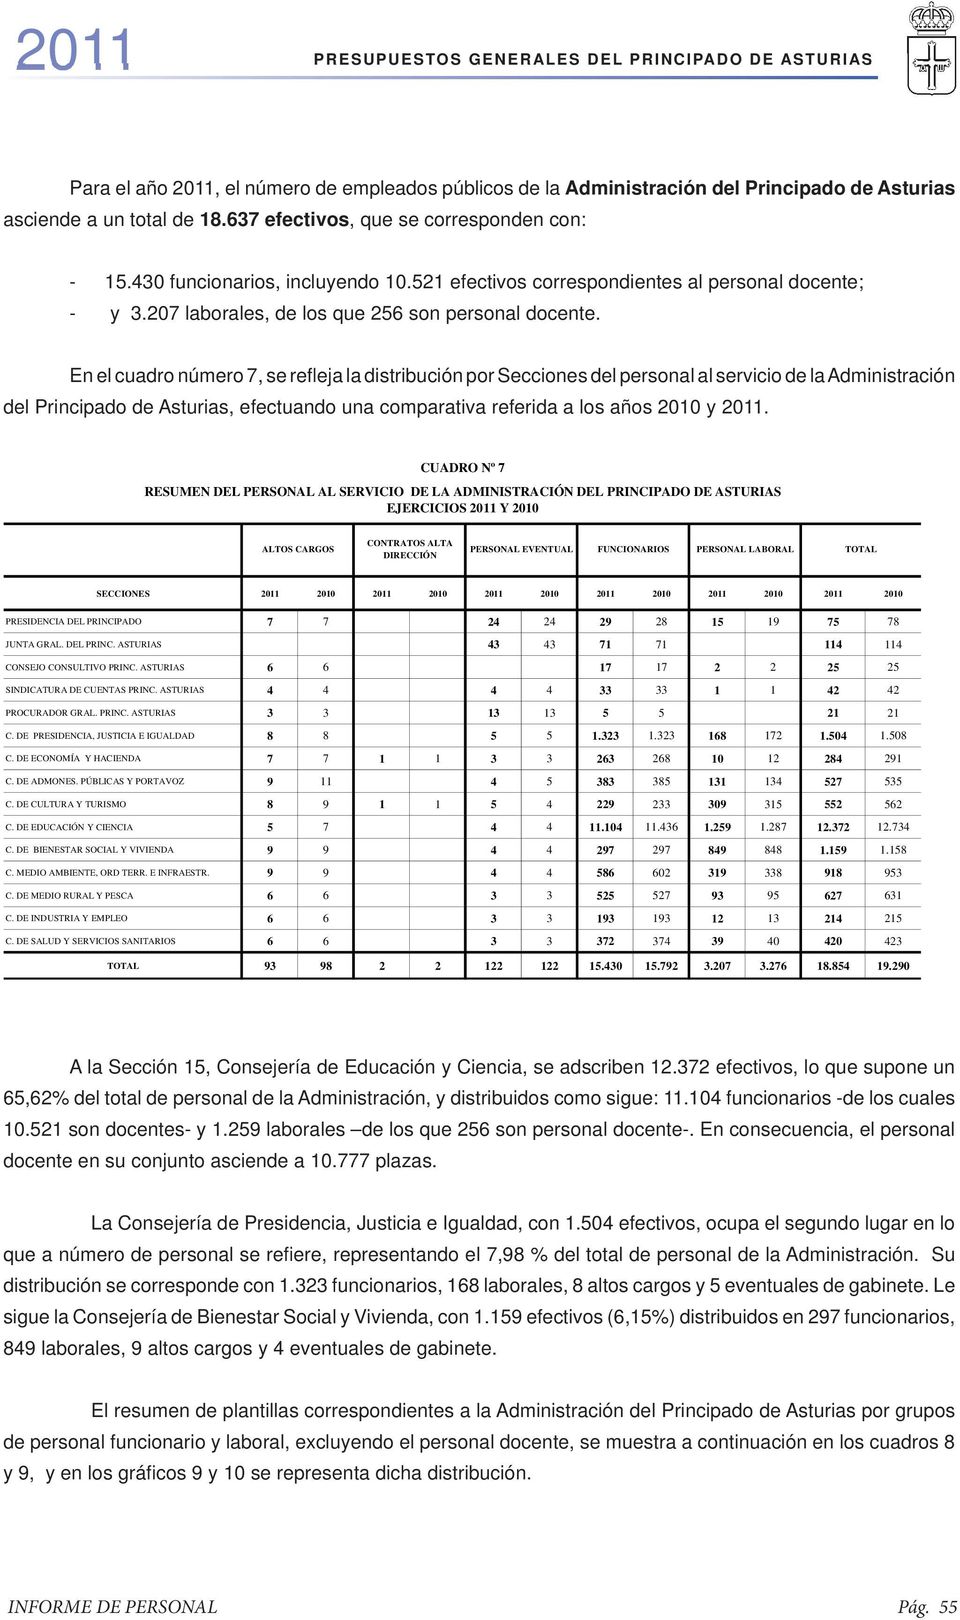 En el cuadro número 7, se refl eja la distribución por Secciones del personal al servicio de la Administración del Principado de Asturias, efectuando una comparativa referida a los años 2010 y 2011.